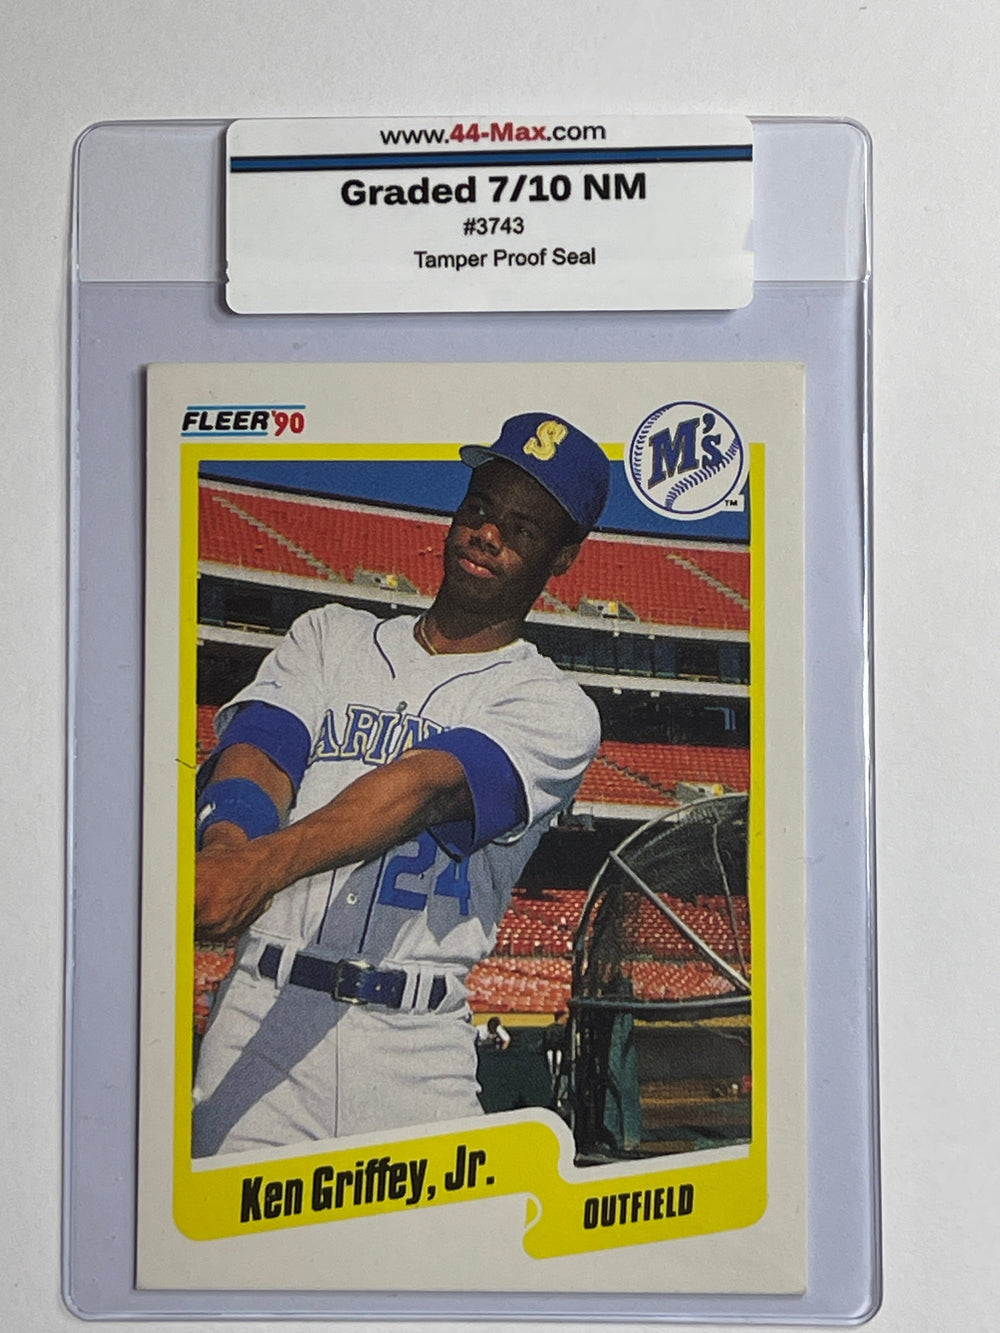 Ken Griffey Jr 1990 Fleer Mariners #513 Card. 44-Max 7/10 NM #3743